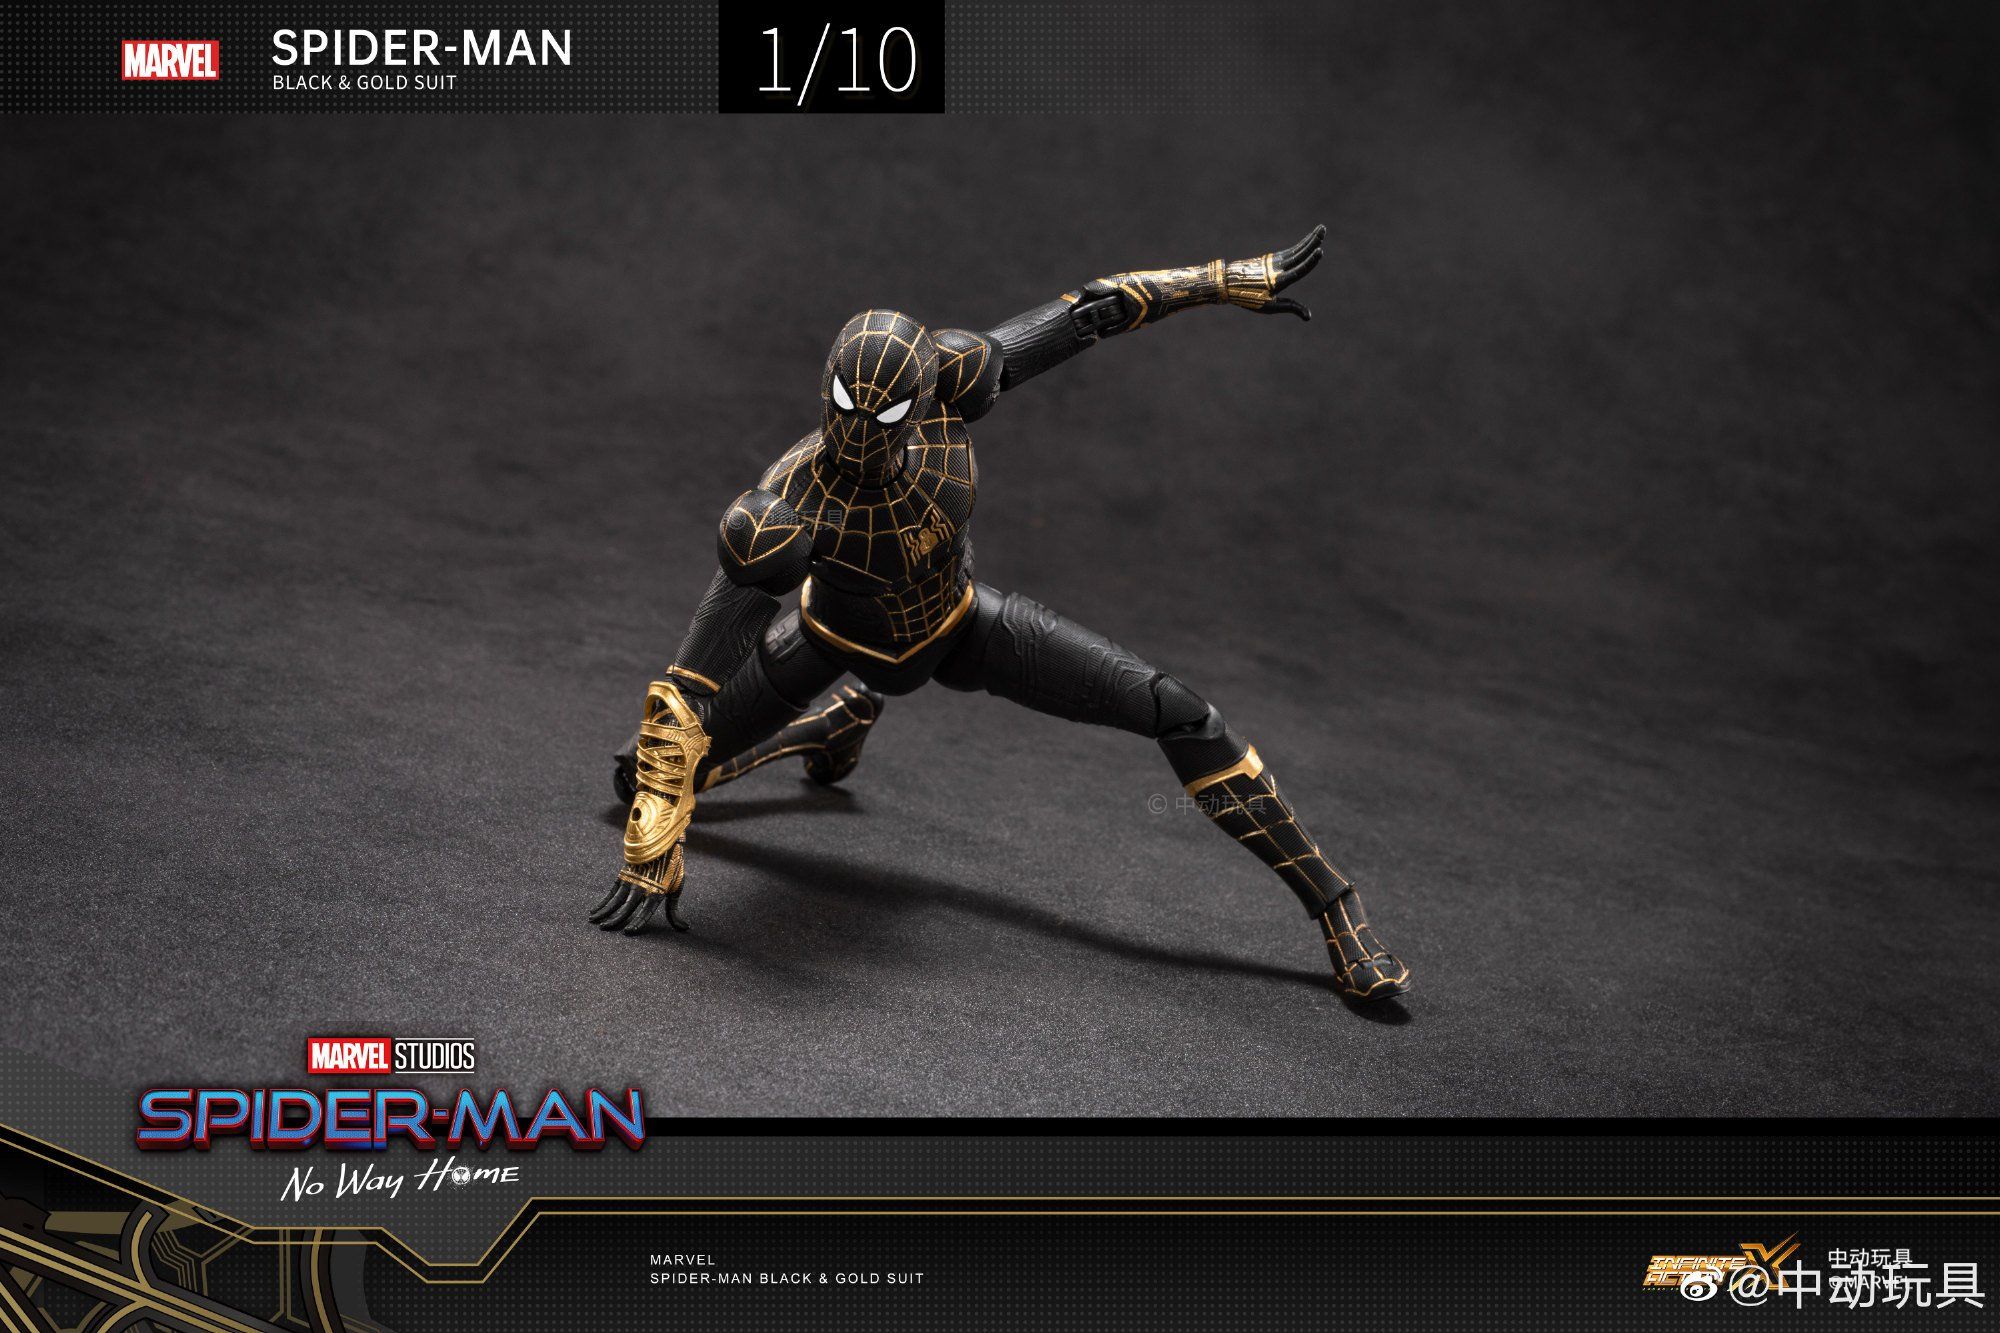  Mô hình nhân vật Marvel người nhện Spider man black suit SHF No way home tỉ lệ 1:10 18CM ZD Toys FG267 